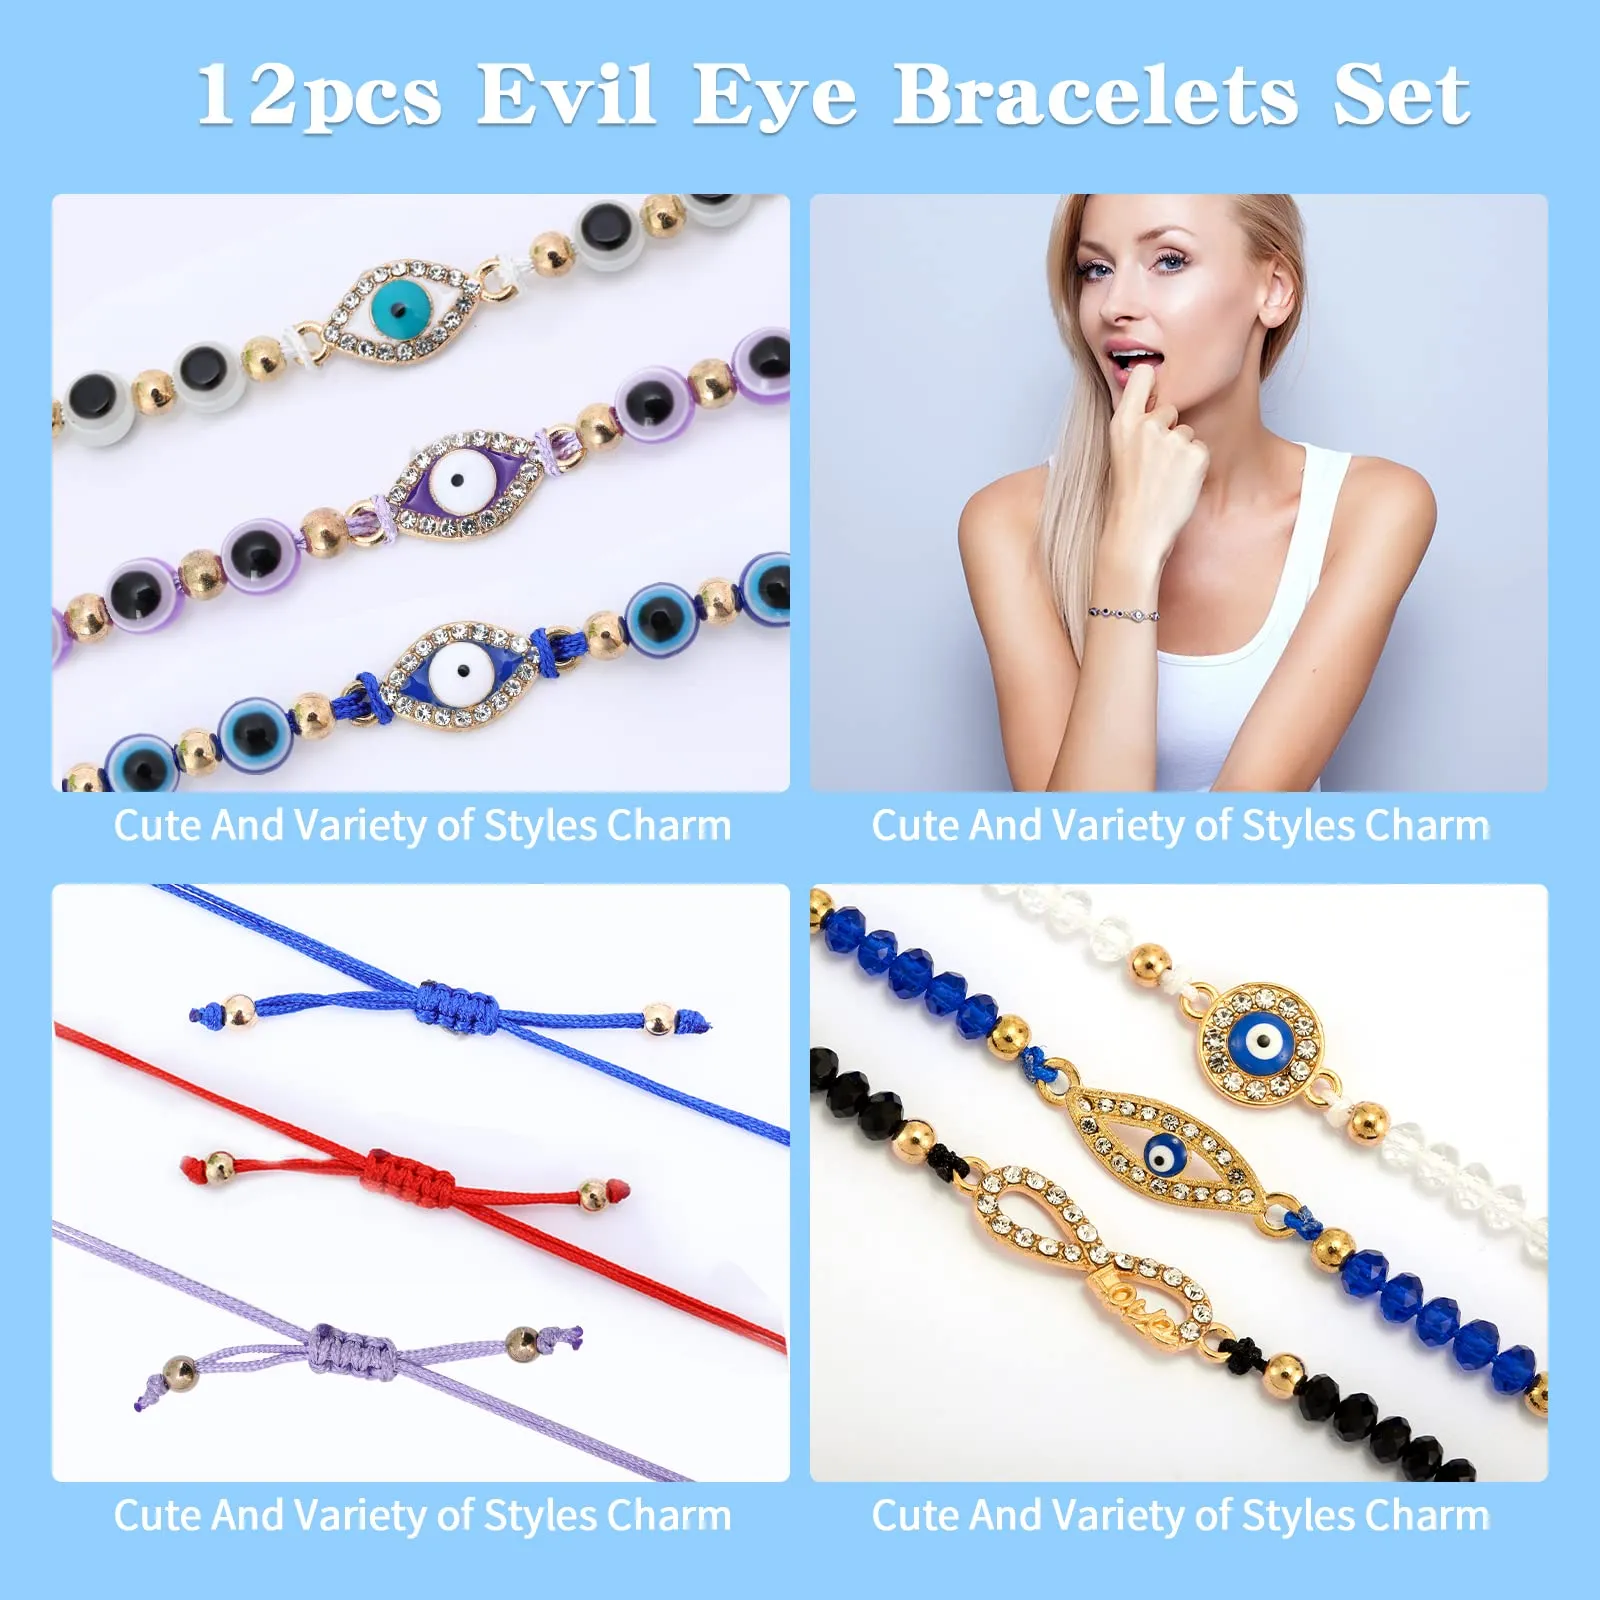 evil eye bracelets mexican bracelets evil eye bracelets pack